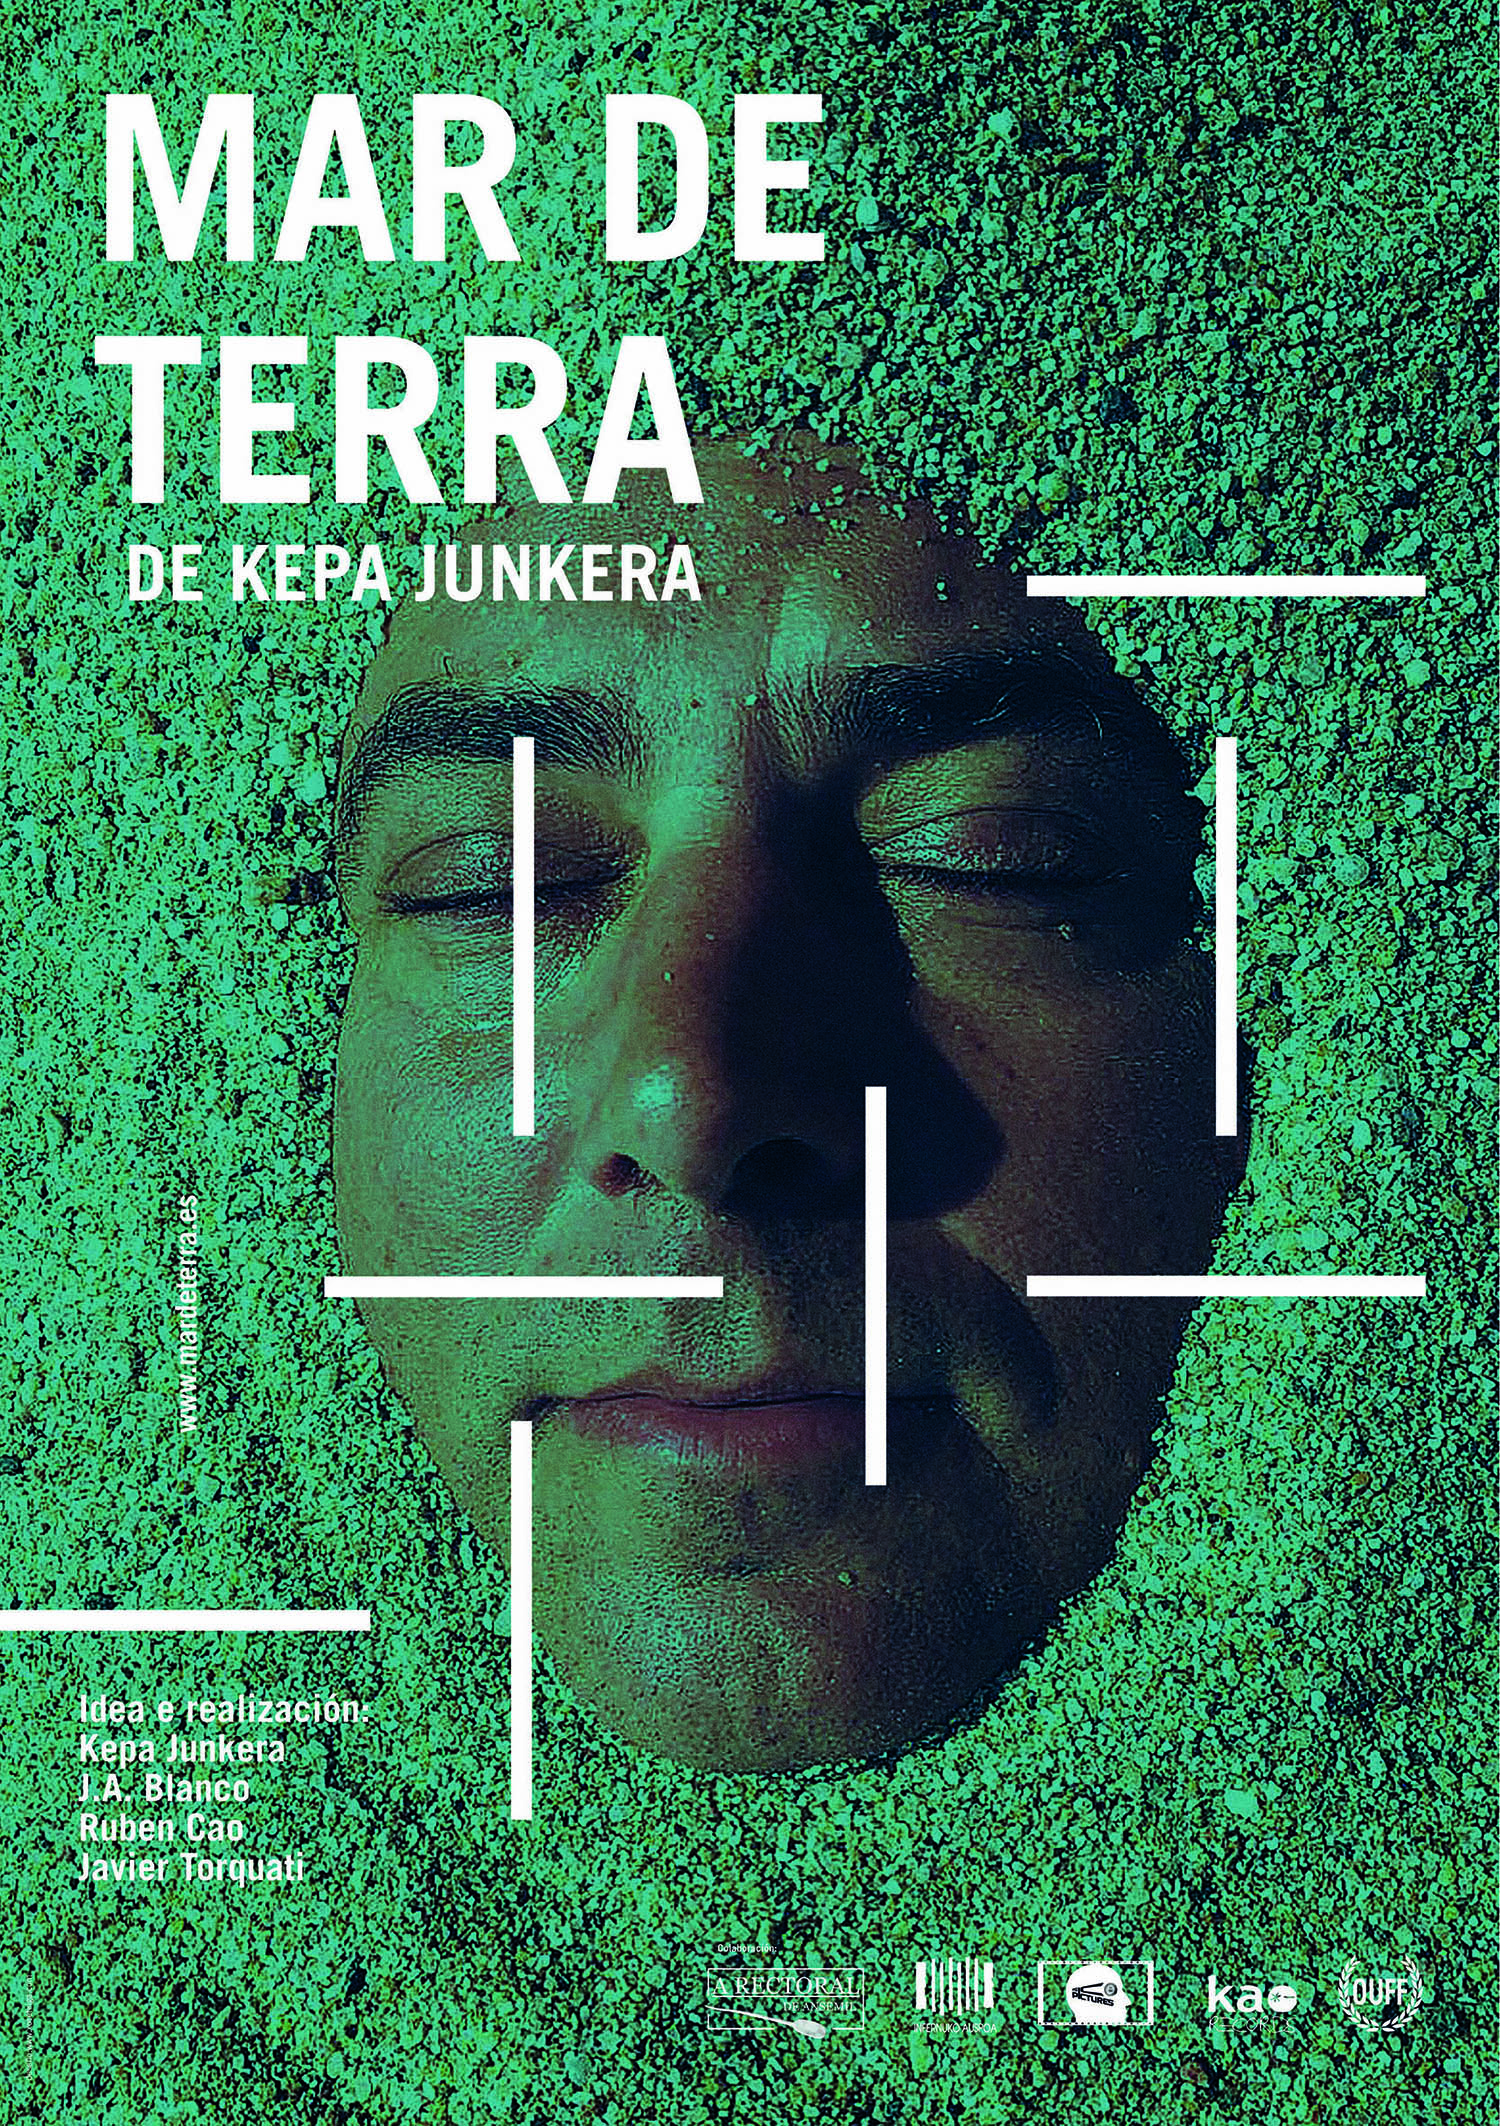 MAR DE TERRA / KEPA JUNKERA by teiga, studio. - Creative Work